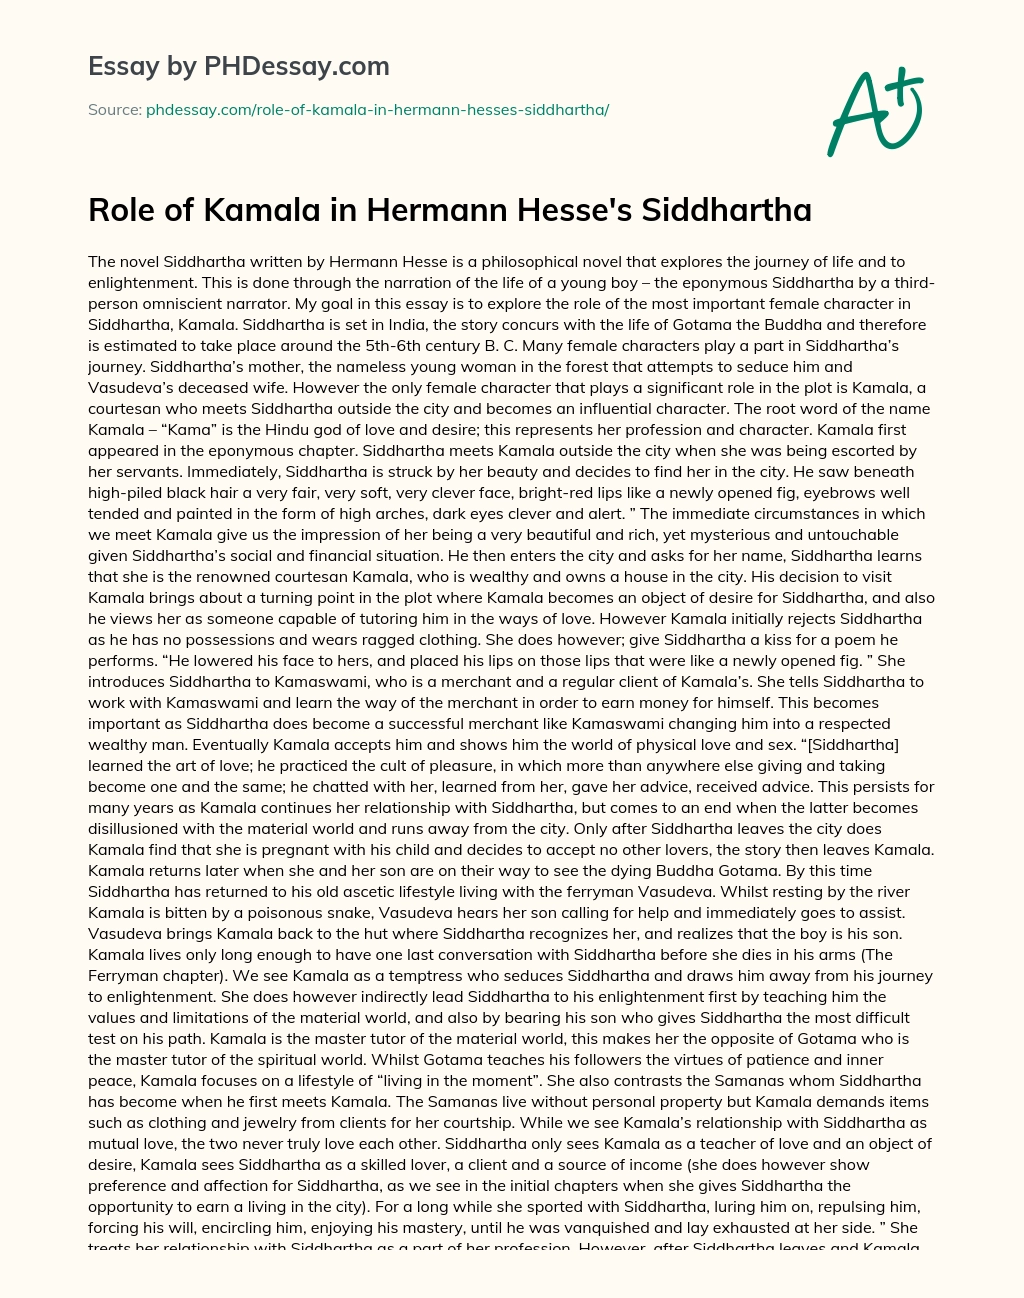 siddhartha and kamala